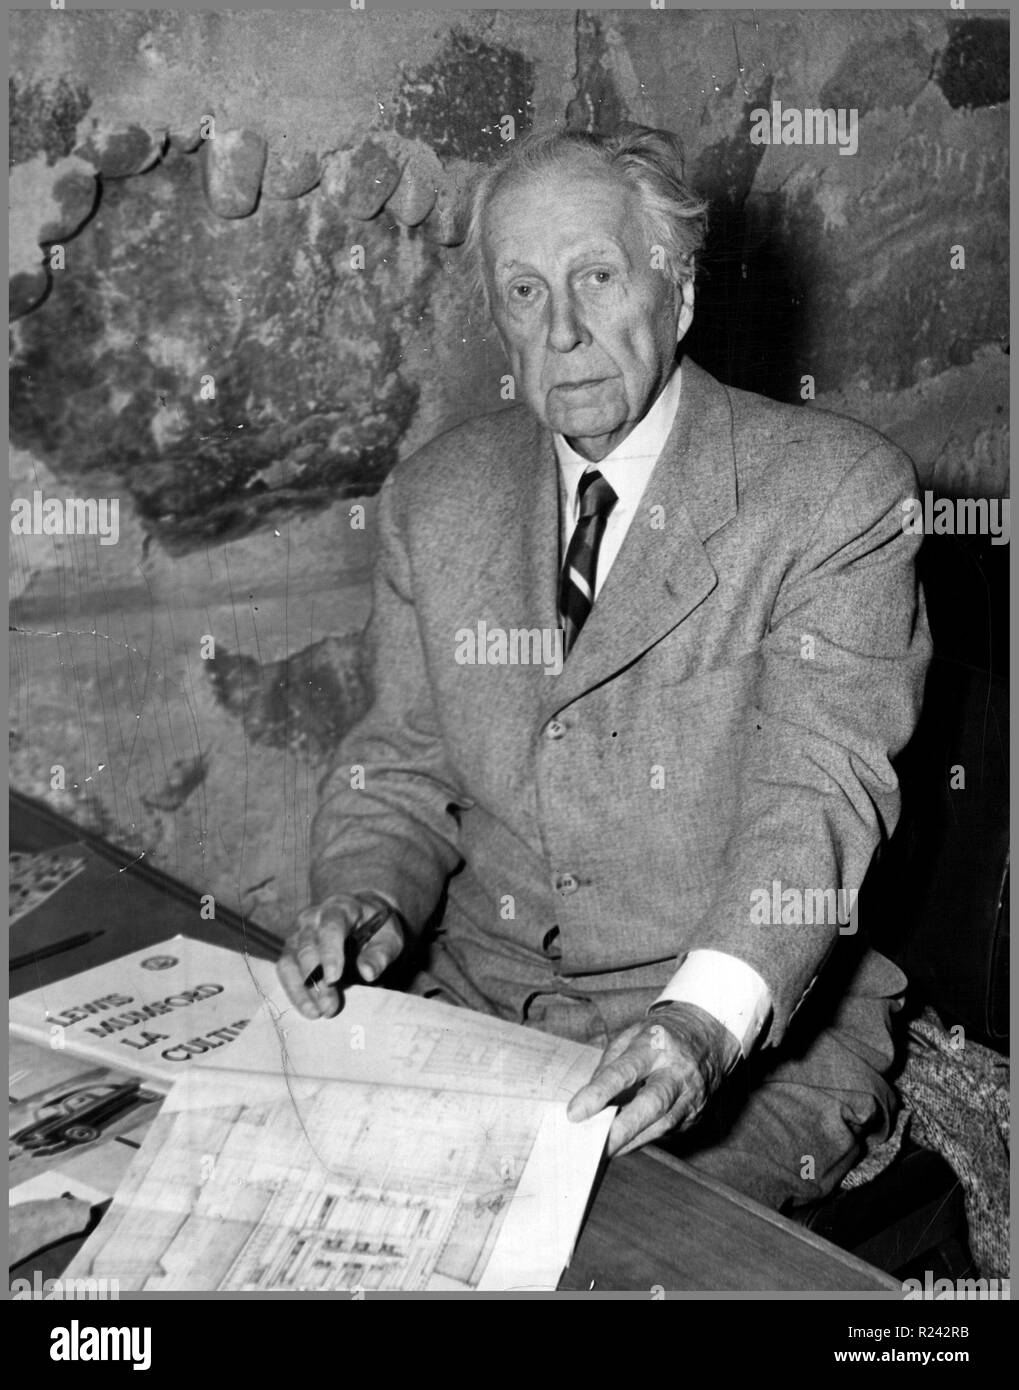 Frank Lloyd Wright (né Frank Lincoln Wright, le 8 juin 1867 - 9 avril 1959) était un architecte américain Banque D'Images